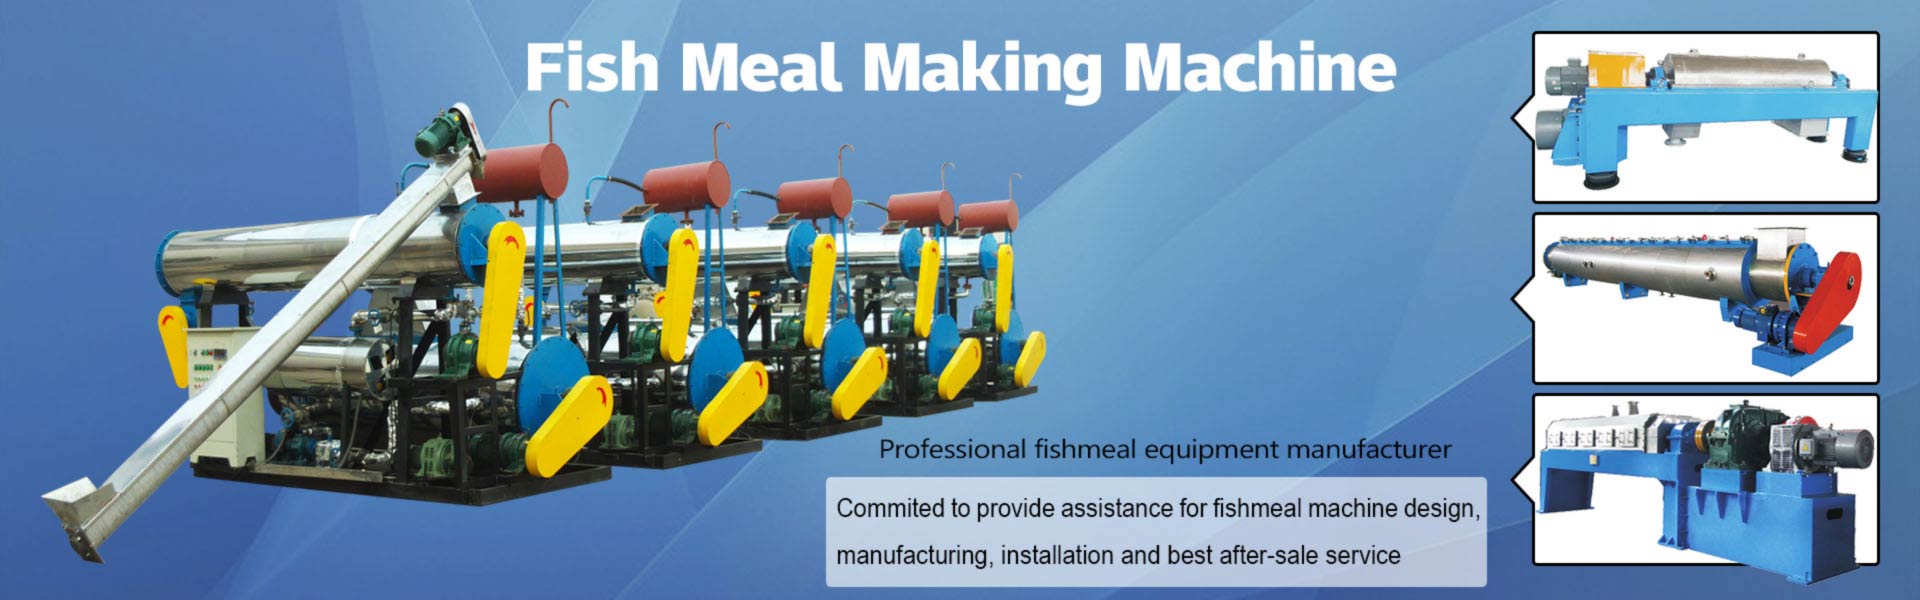 fishmeal-machine-3